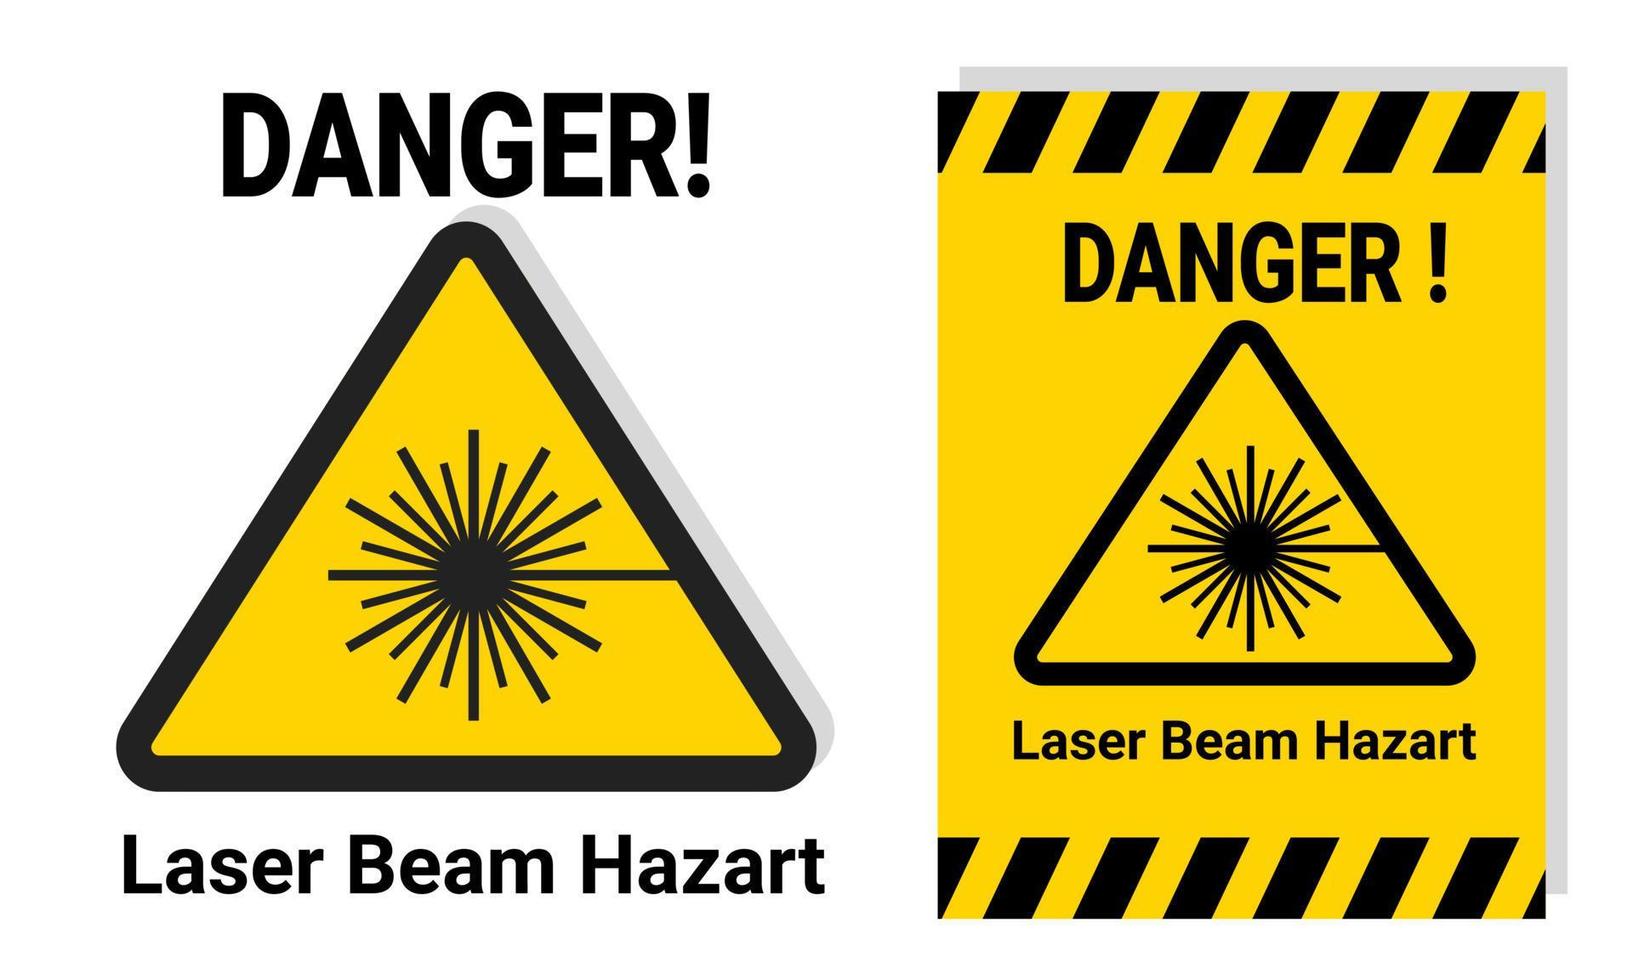 segnale di pericolo di luce laser per sicurezza sul lavoro o in laboratorio con etichetta adesiva gialla stampabile per la notifica. illustrazione vettoriale icona di pericolo